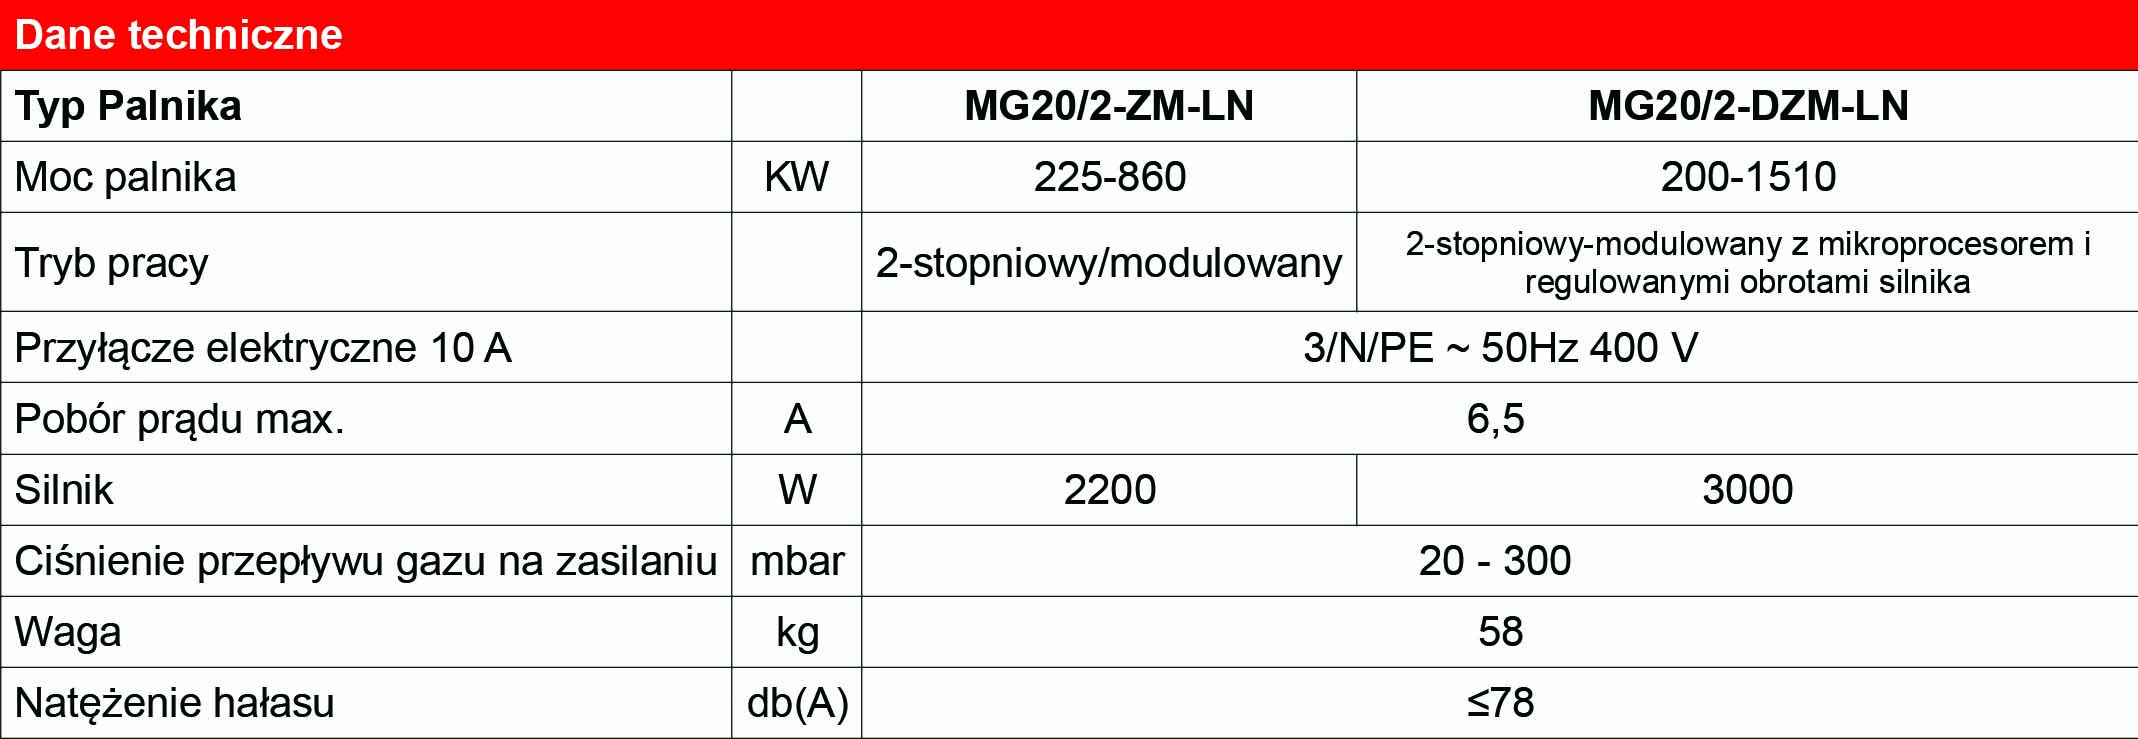 dane_techniczne_MG20_2-ZM-LN